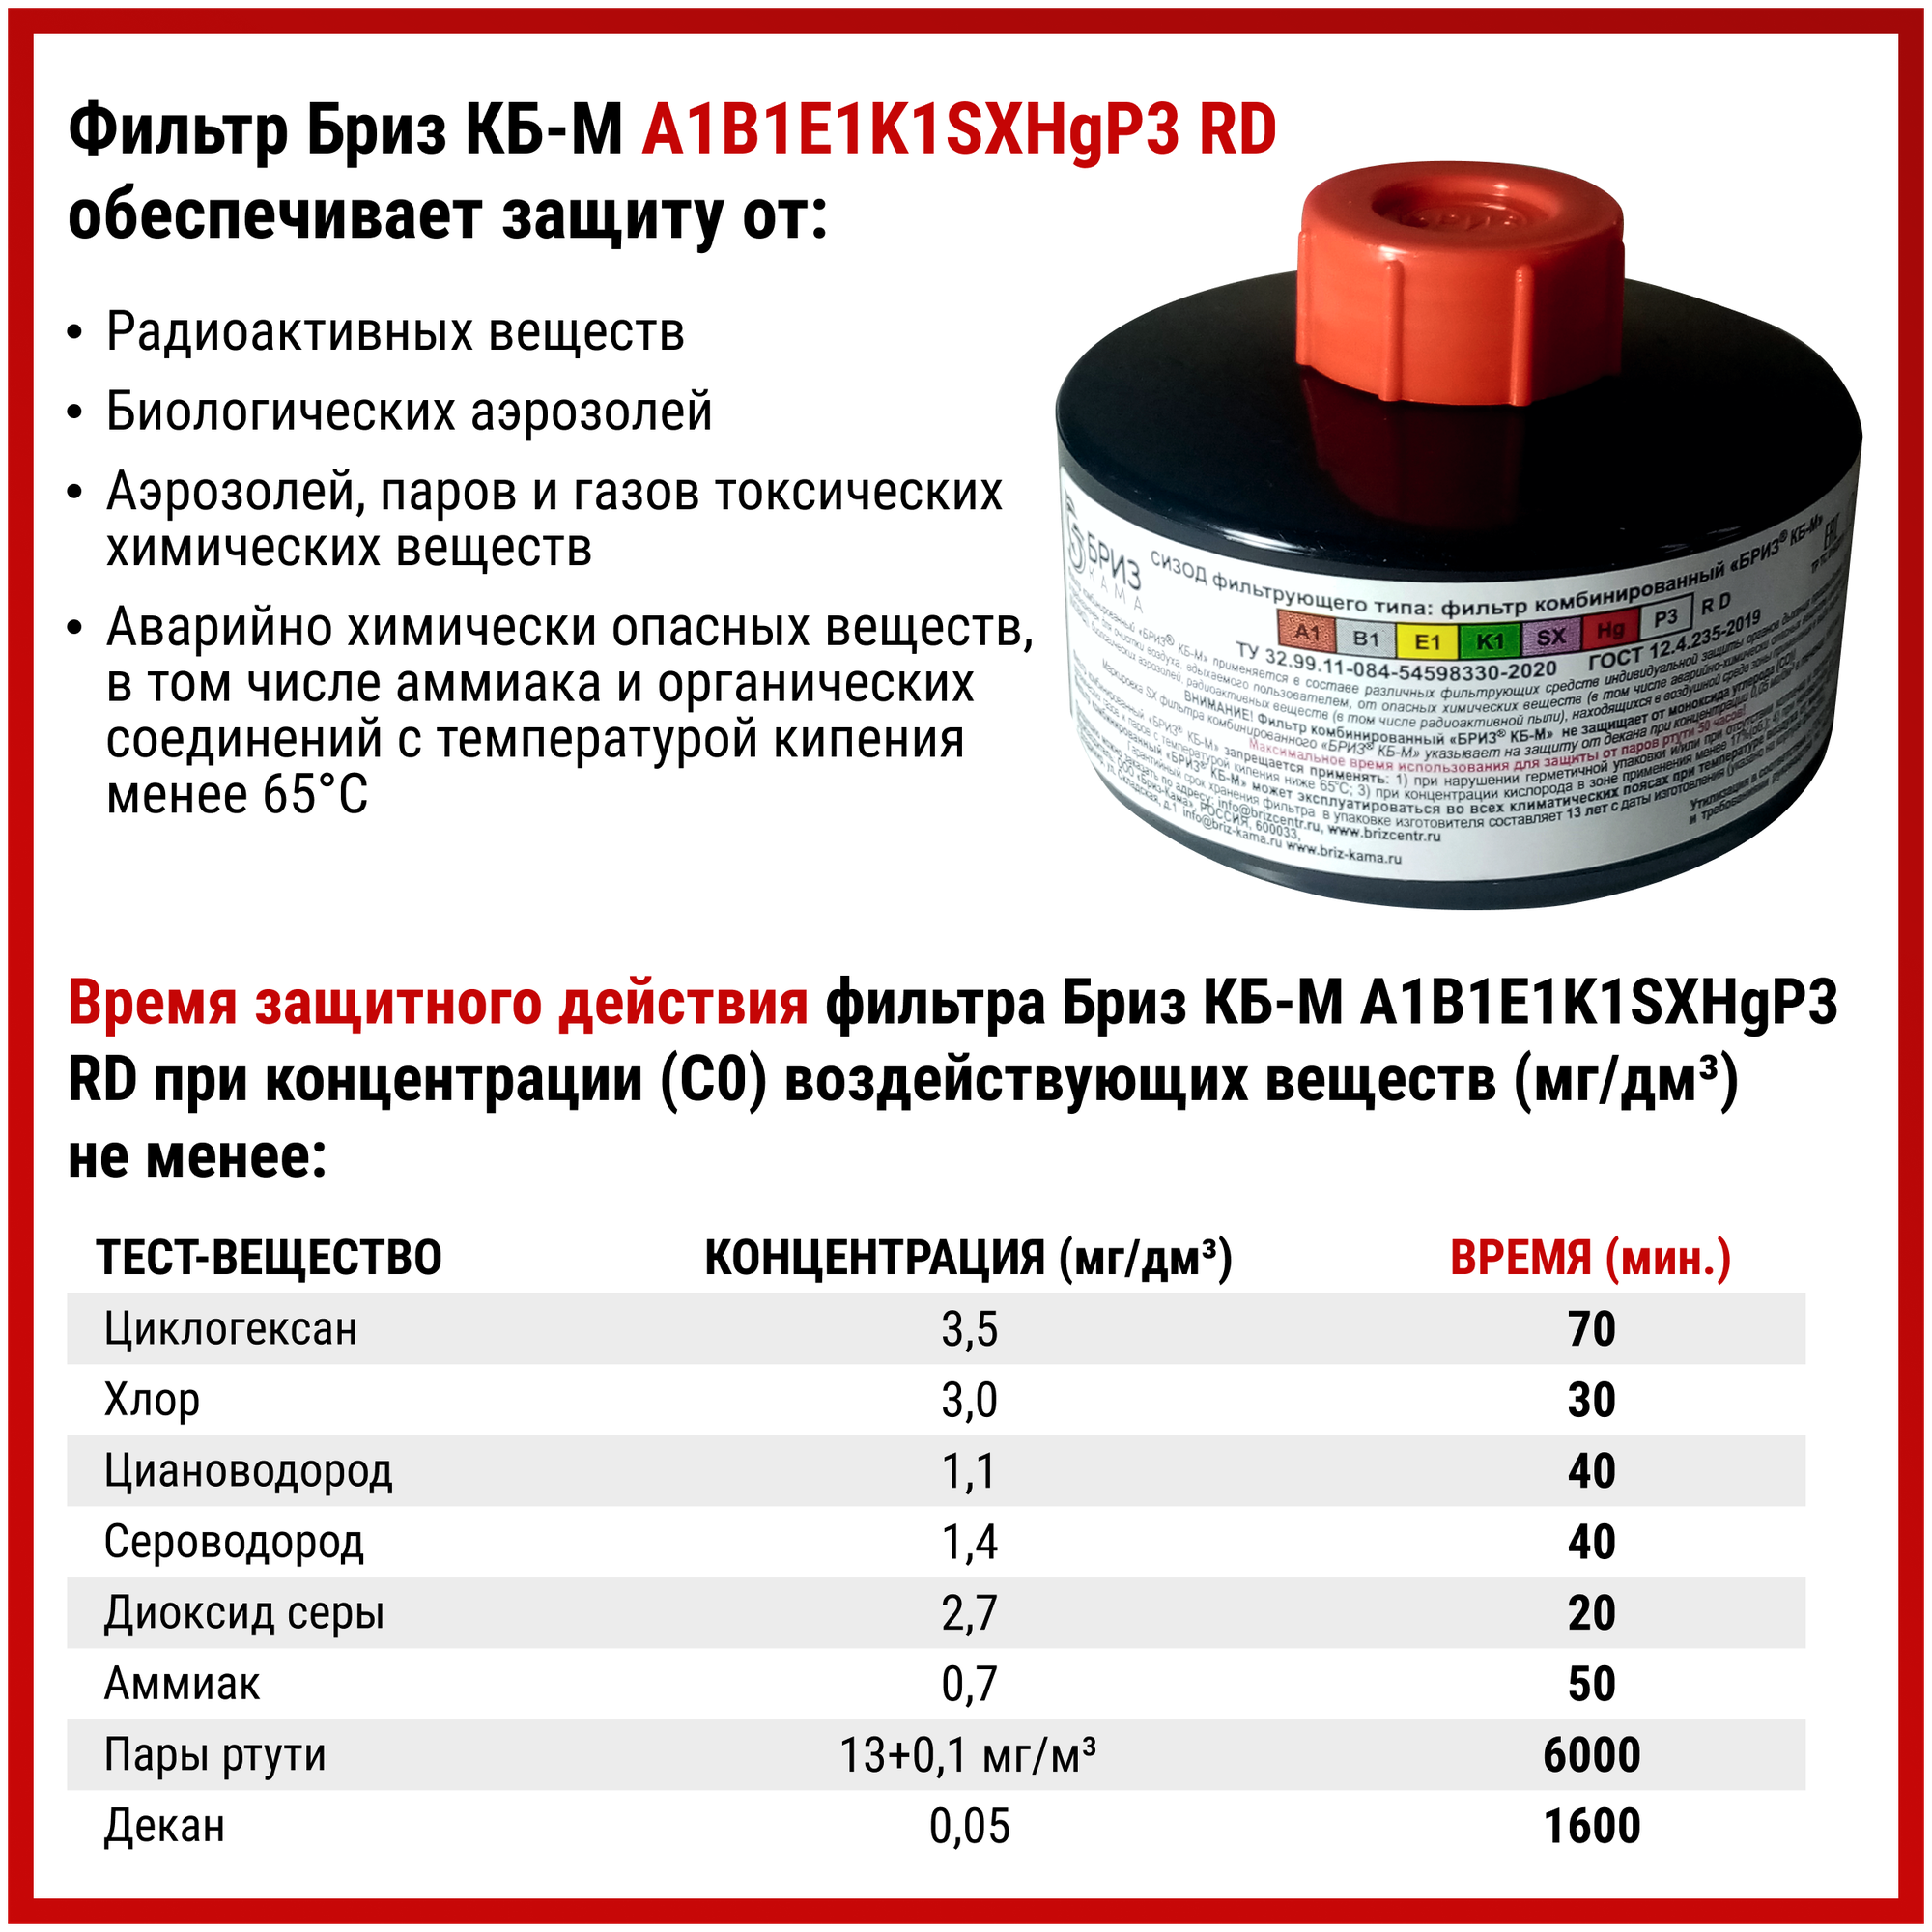 Противогаз Бриз-3306 ППМ с фильтром A1B1E1K1SXHgP3D респиратор химический от радиоактивных веществ маска защитная многоразовая распиратор, размер L - фотография № 6